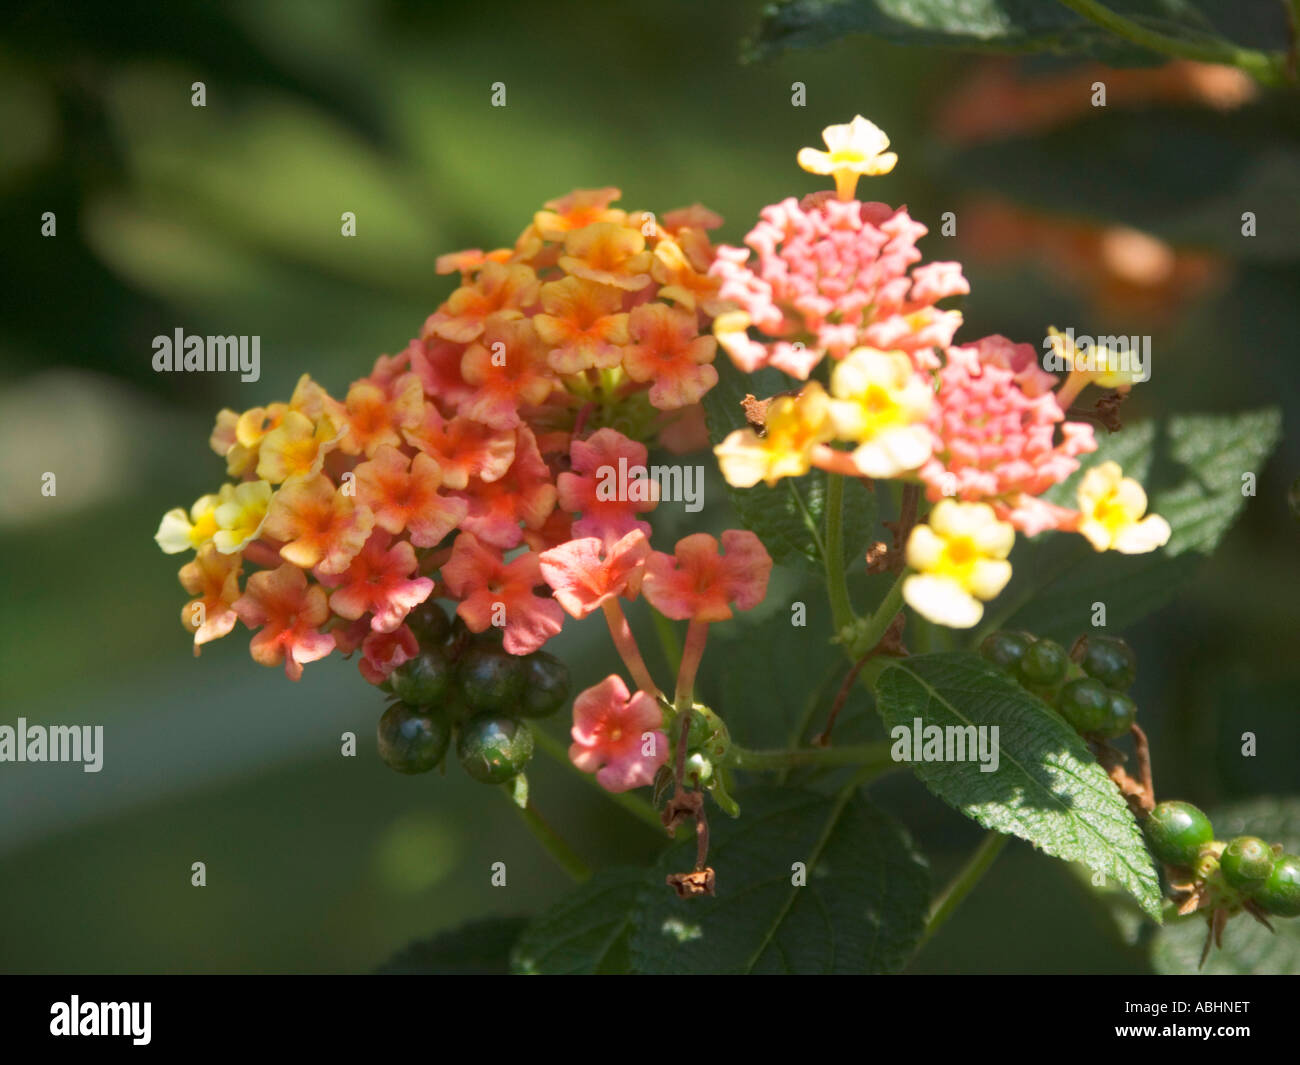 Lantana blossom Stock Photo